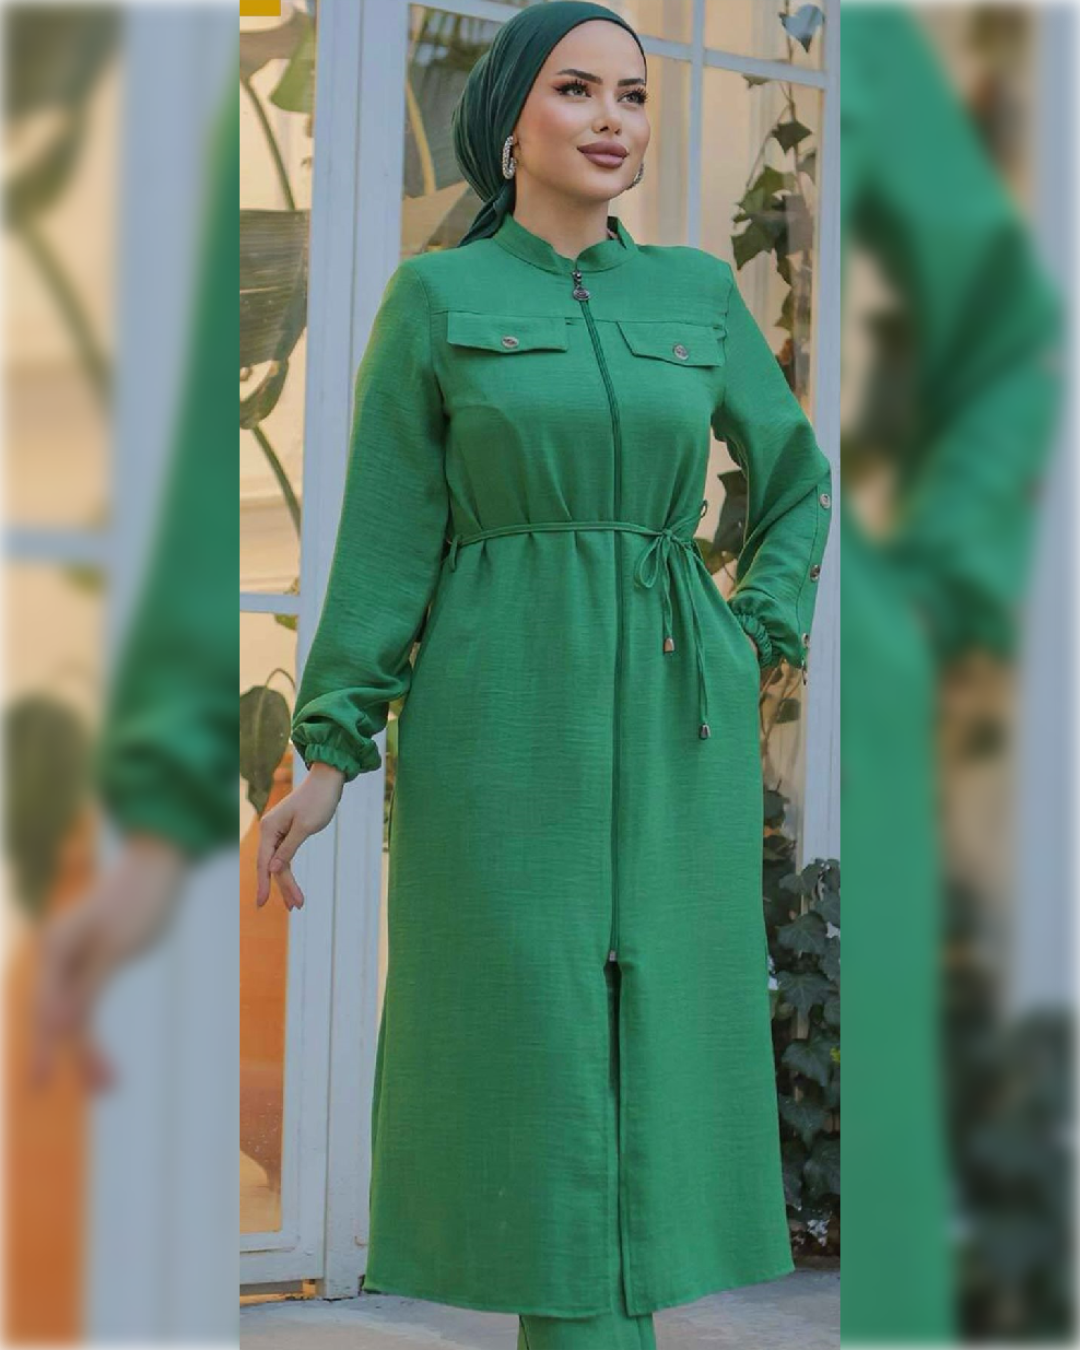 Suha Midi high waist belted Tunic in Green Shade قميص سهى الطويل و الواسع و بحزام الخصر العالي باللون الأخضر الجميل